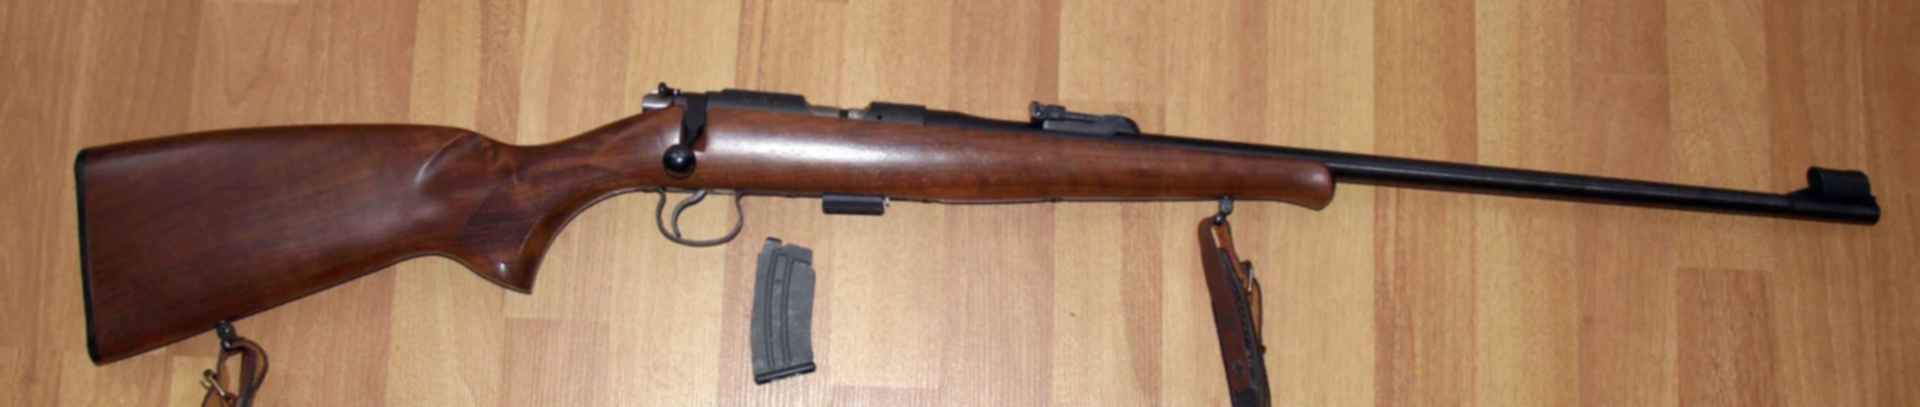 Малокалиберная винтовка cz zkm 452 scout: отзывы, цена, технические характеристики, обзор